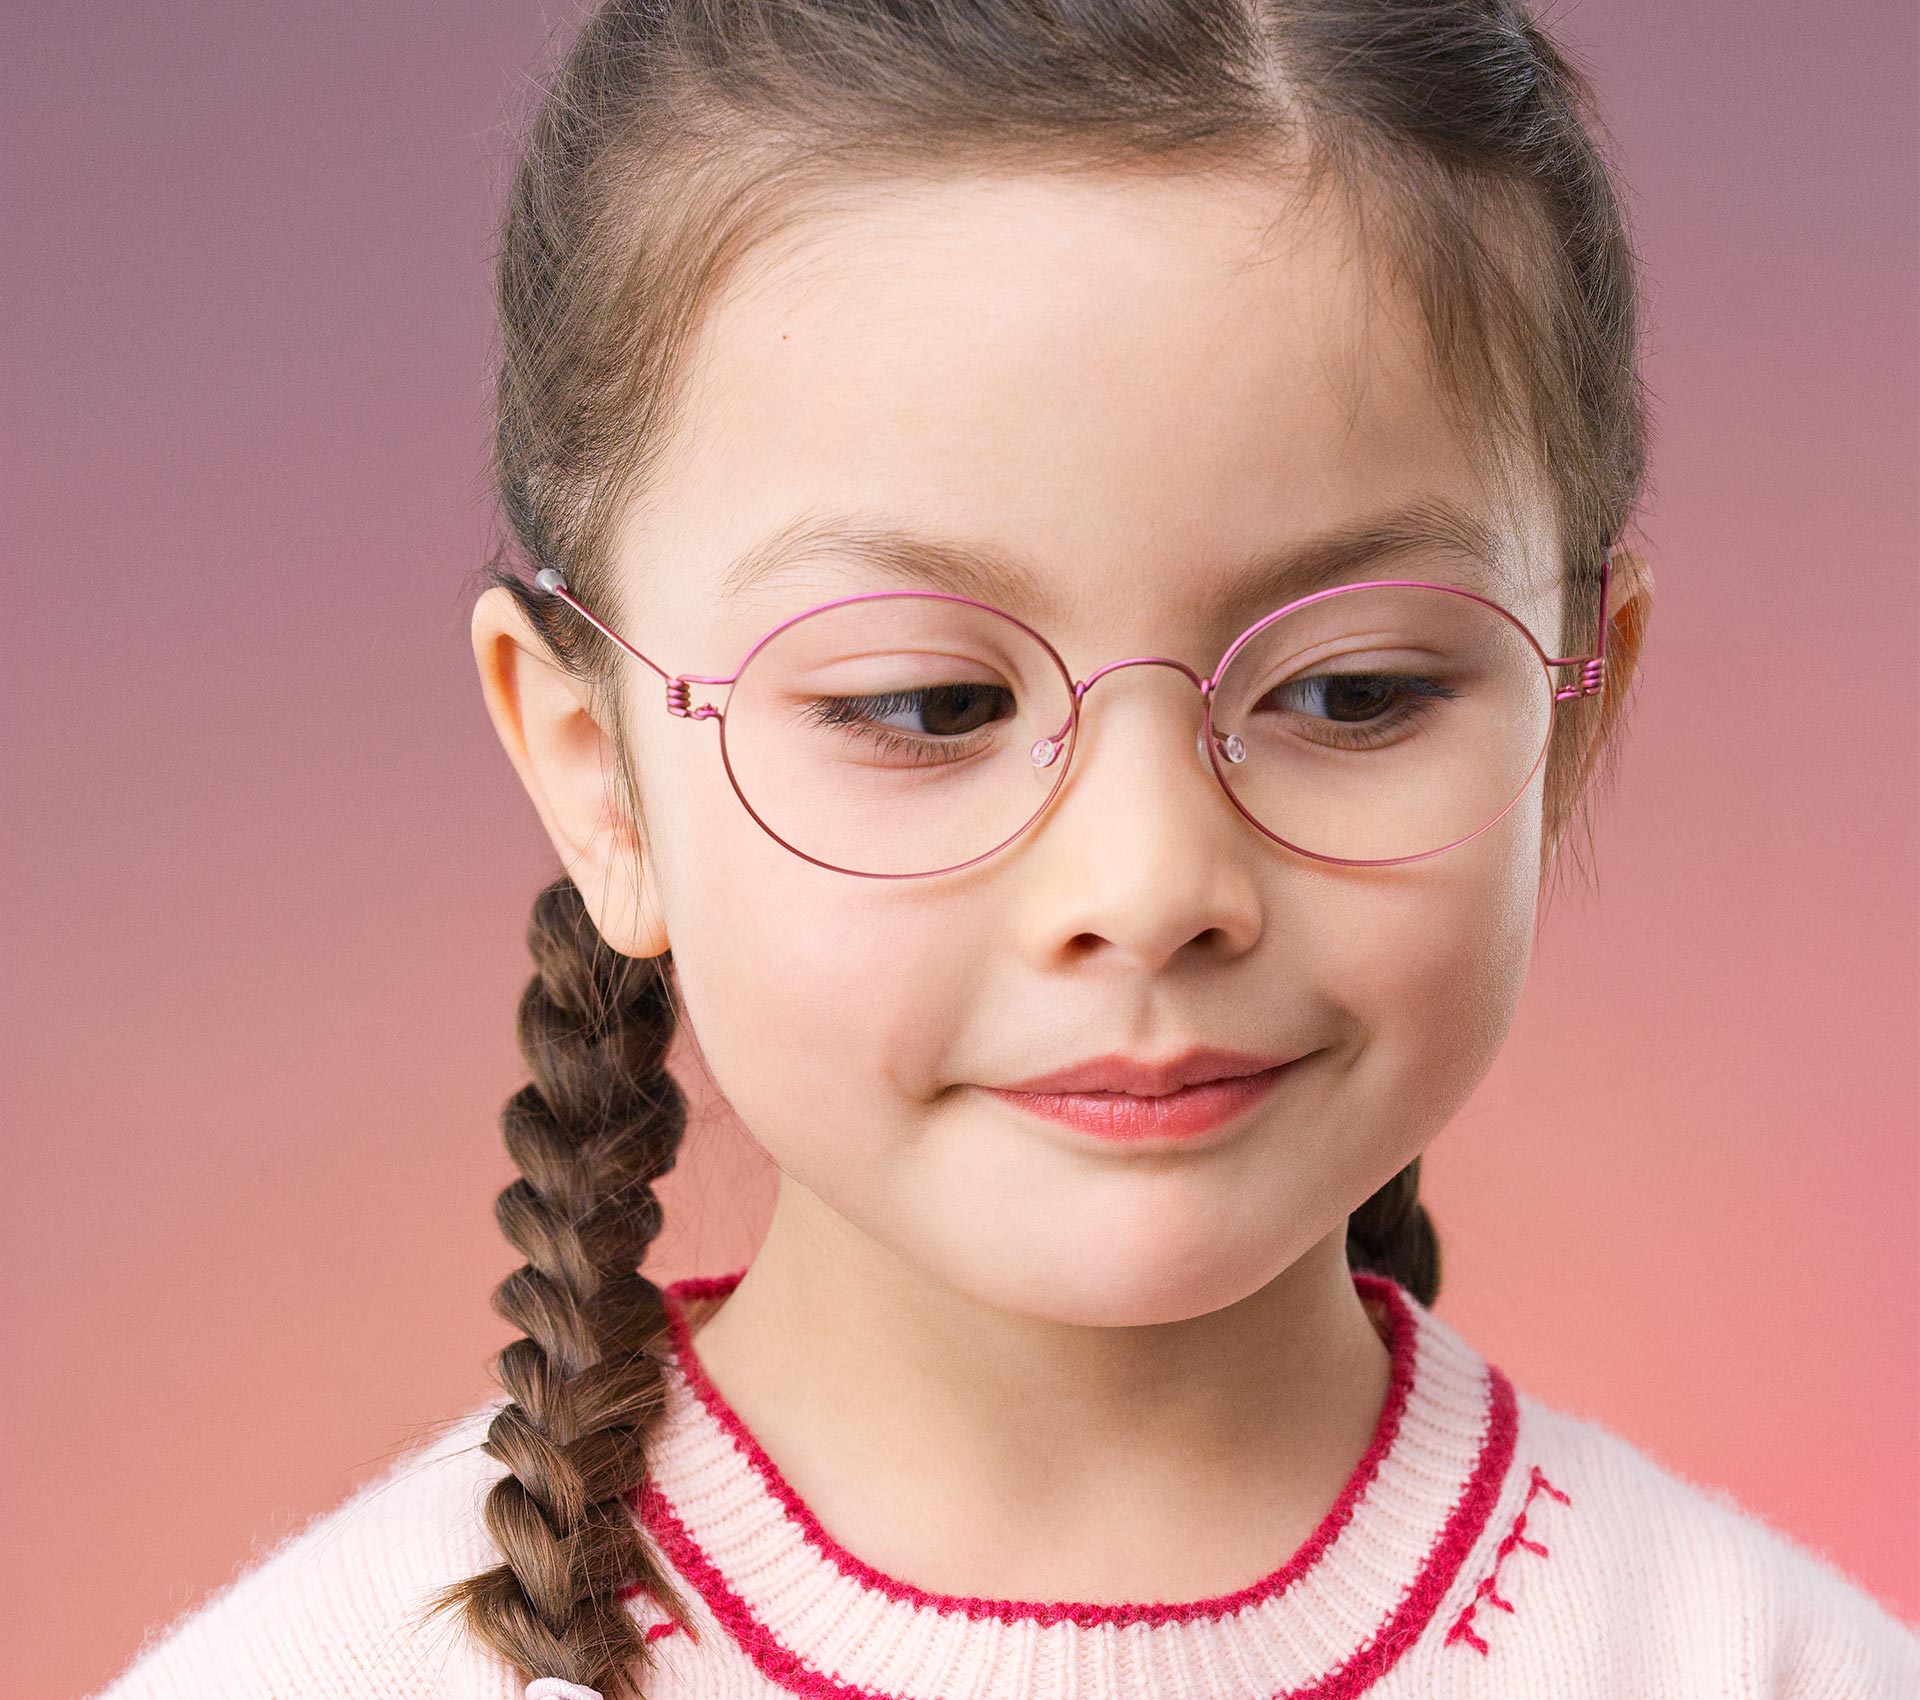 Montures de lunettes Enfant Monture de lunettes LUNETTE SANS MARQUE Taille unique multicouleur Enfant Fille Accessoires Enfant Montures de lunettes Enfant 